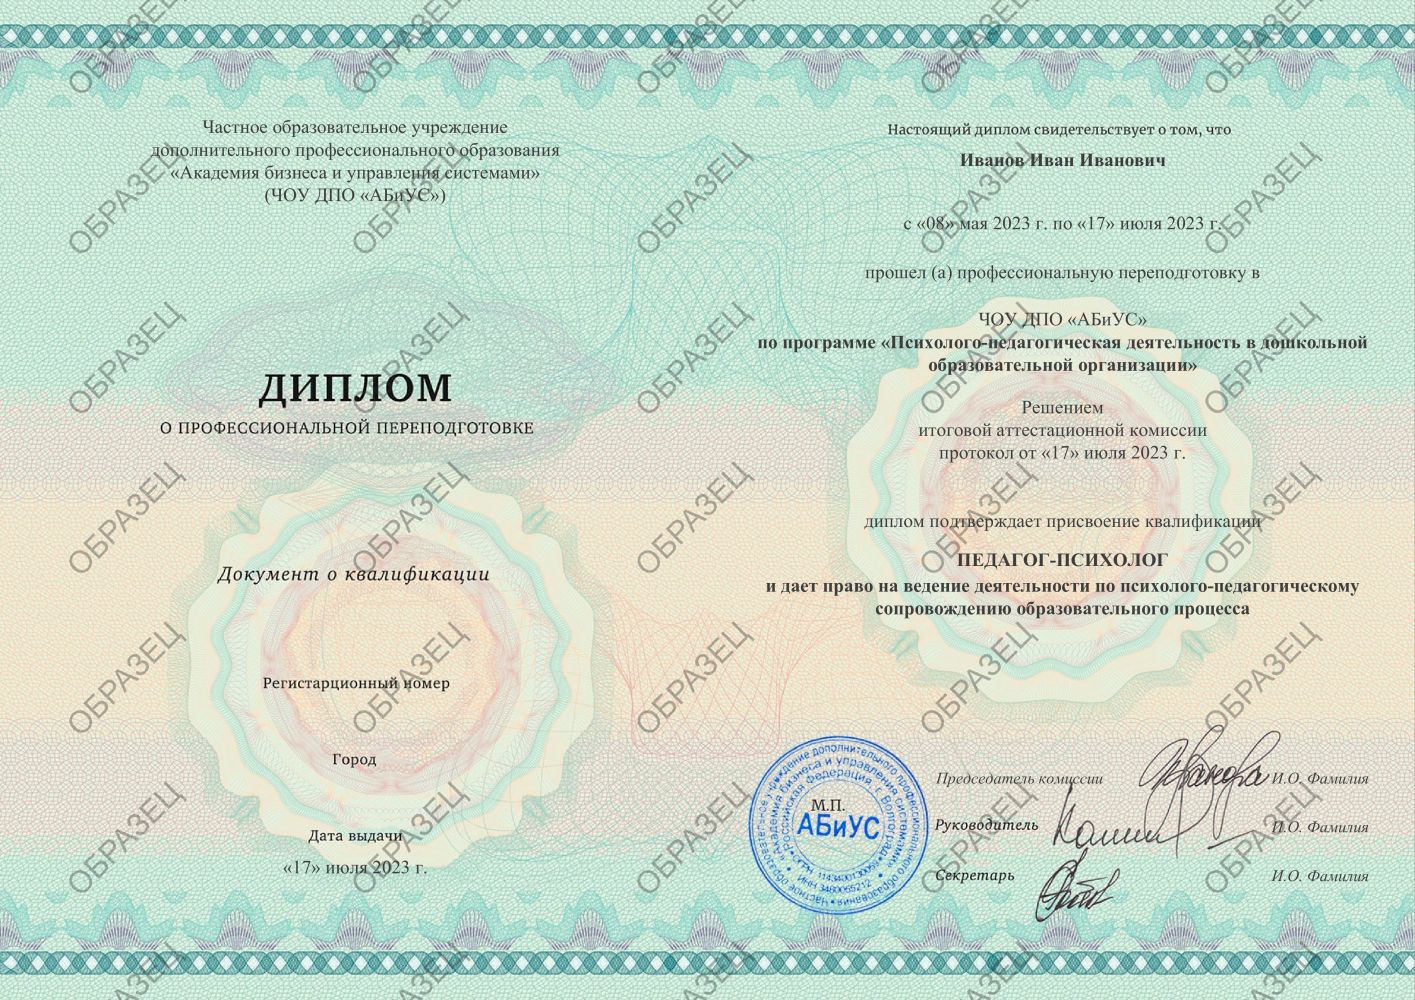 Диплом Психолого-педагогическая деятельность в дошкольной образовательной организации 260 часов 9500 руб.